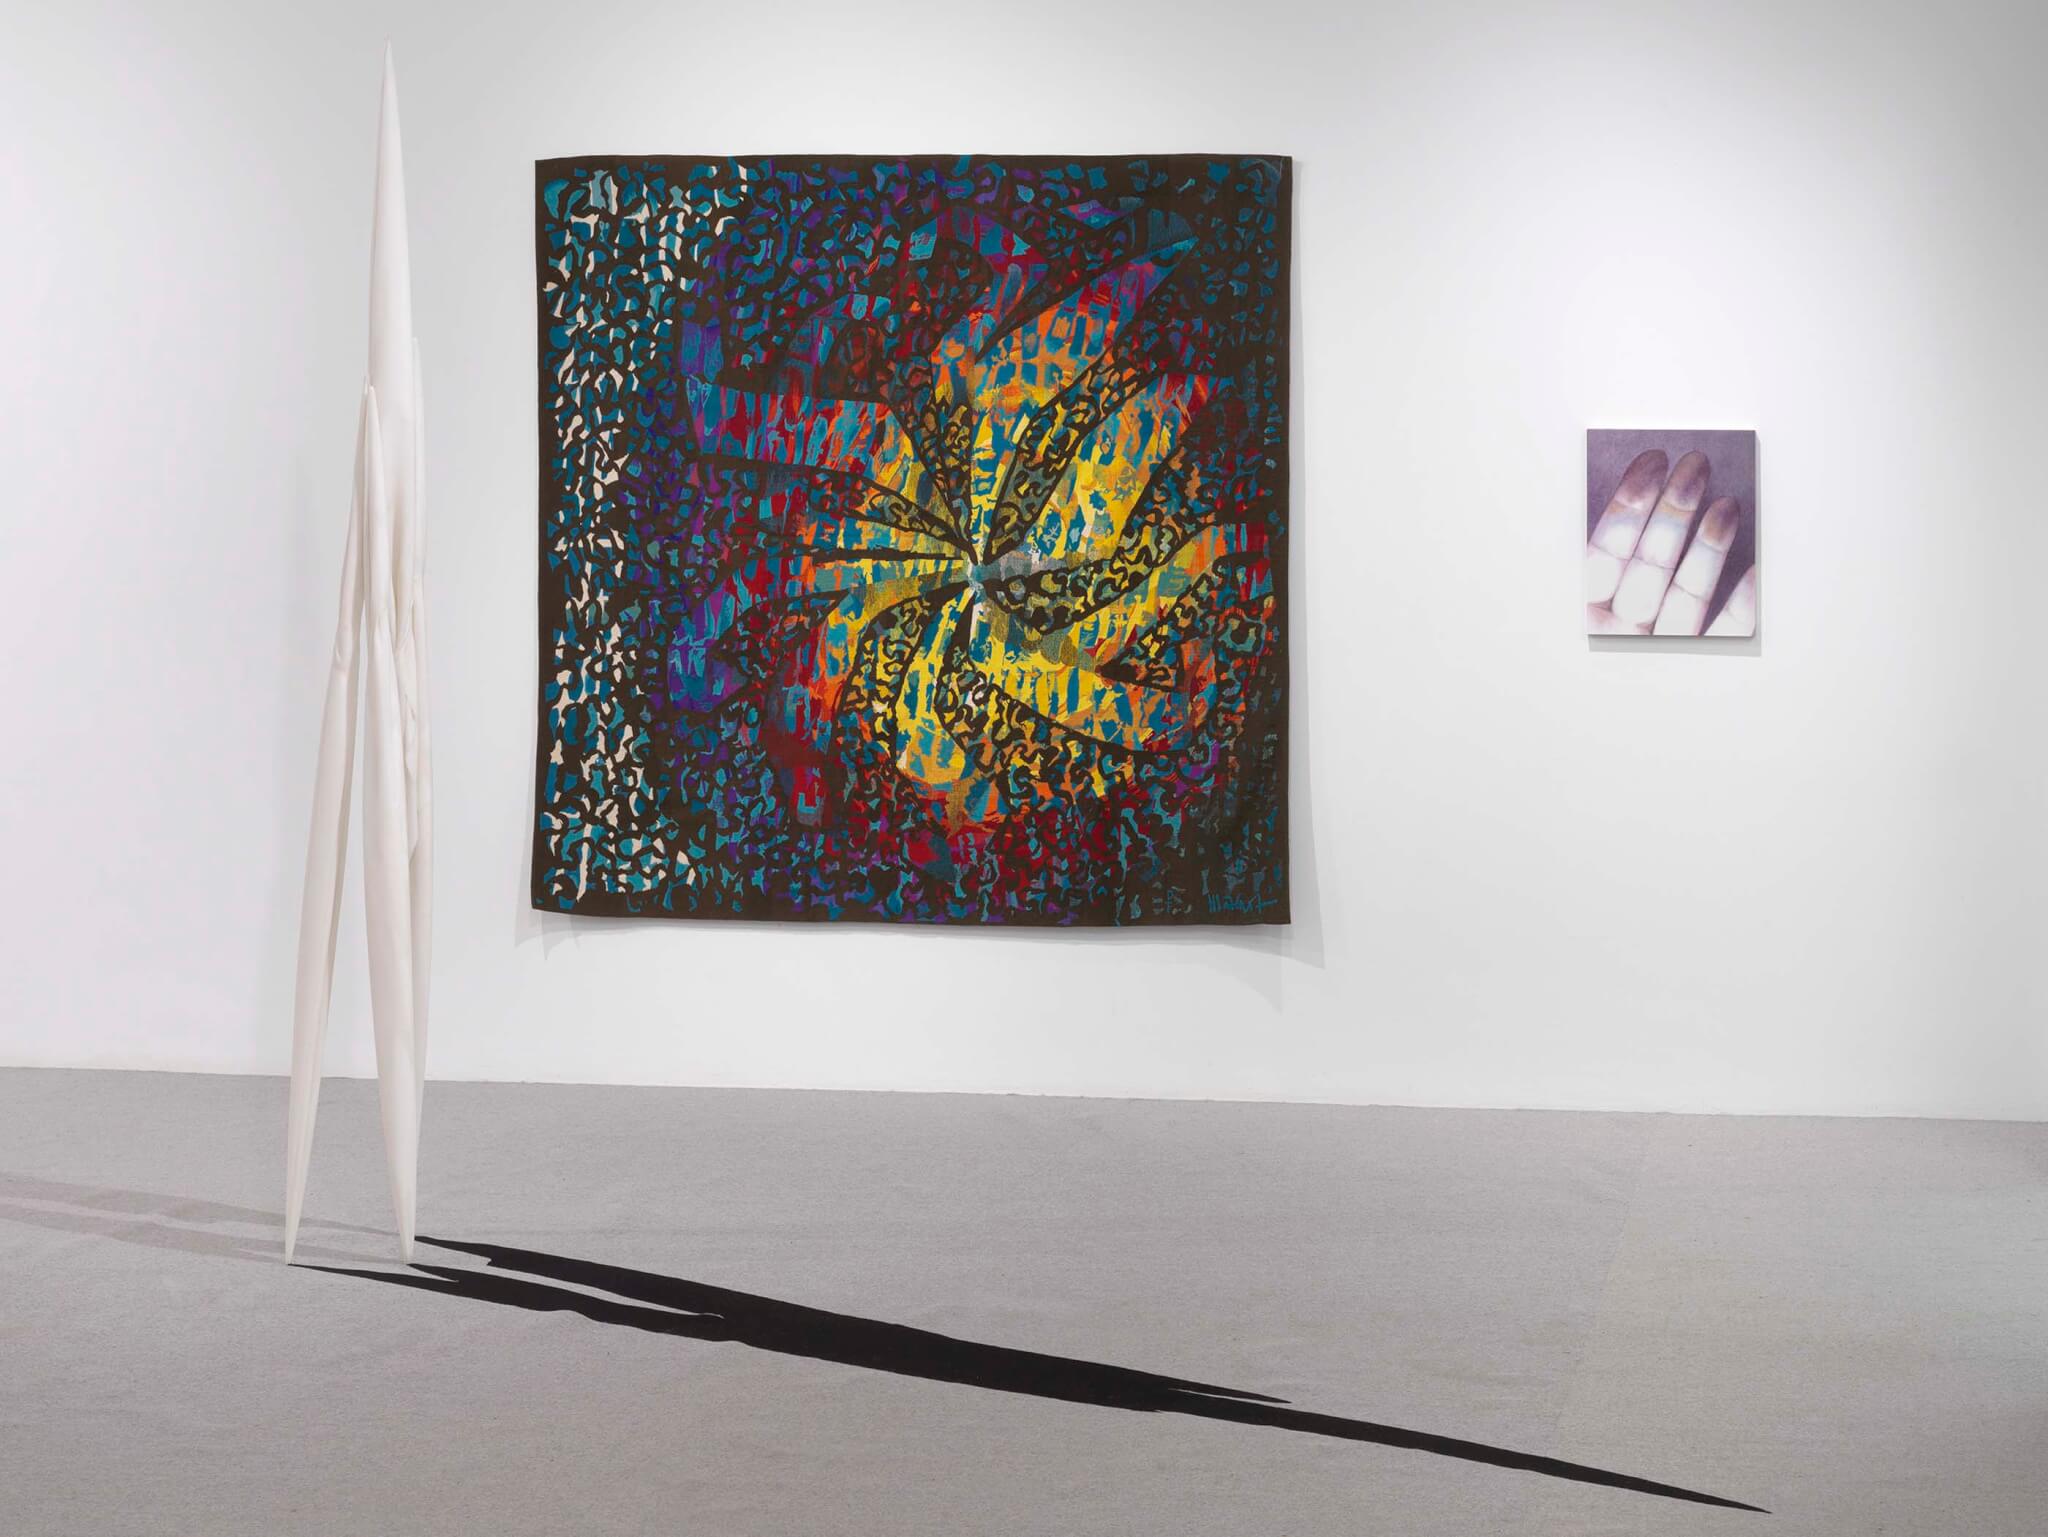 barevný gobelín visí na zdi v galerii